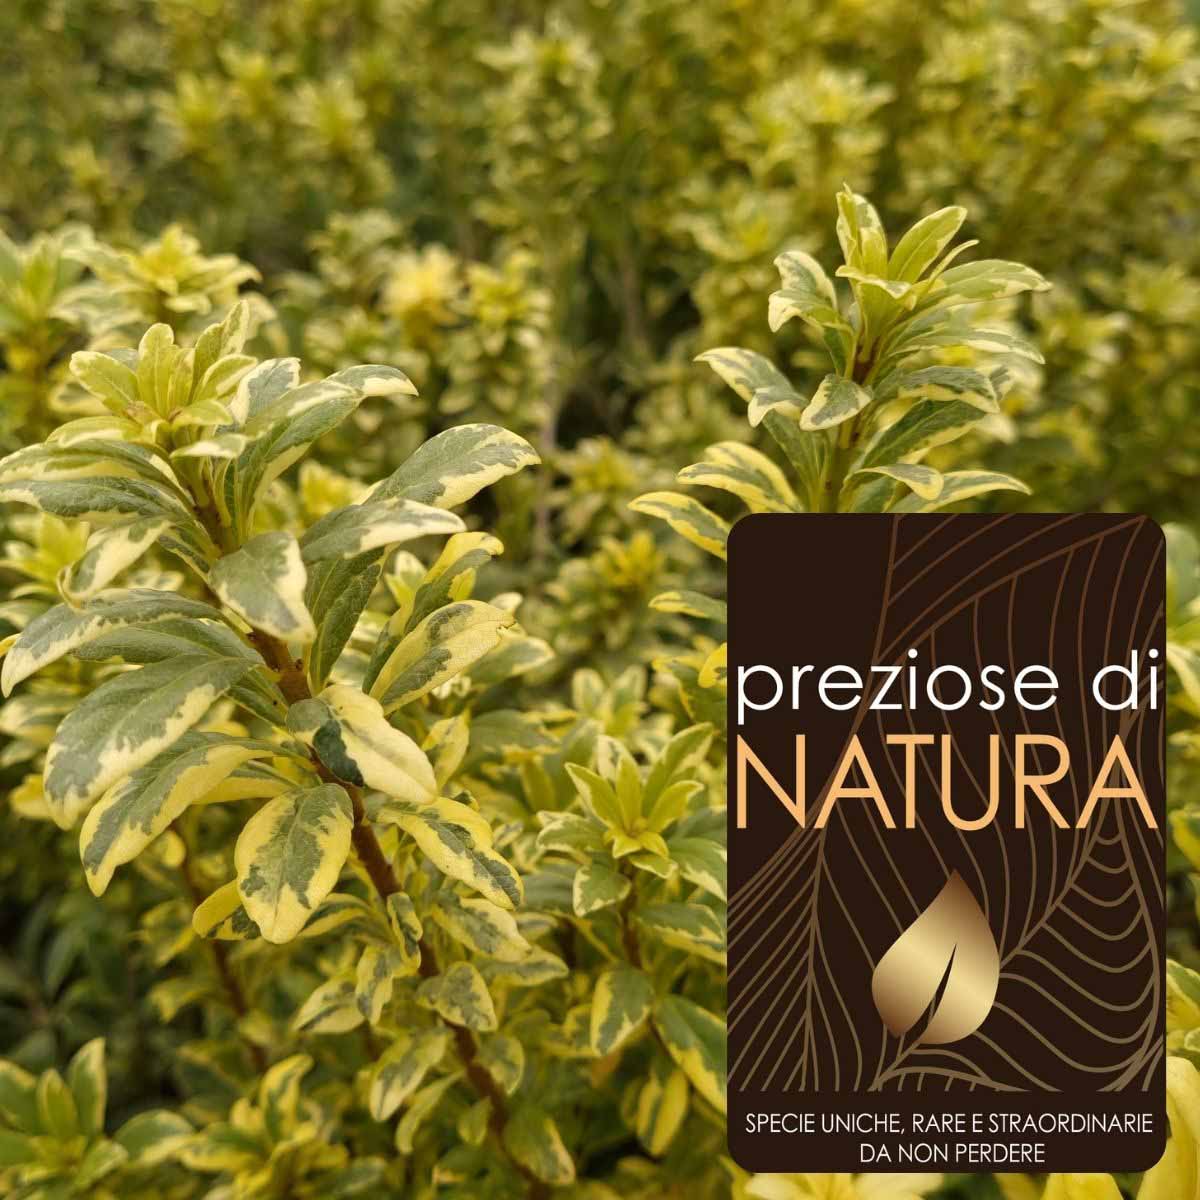 Preziose di Natura – Pittosporum Heterophyllum “Variegato”